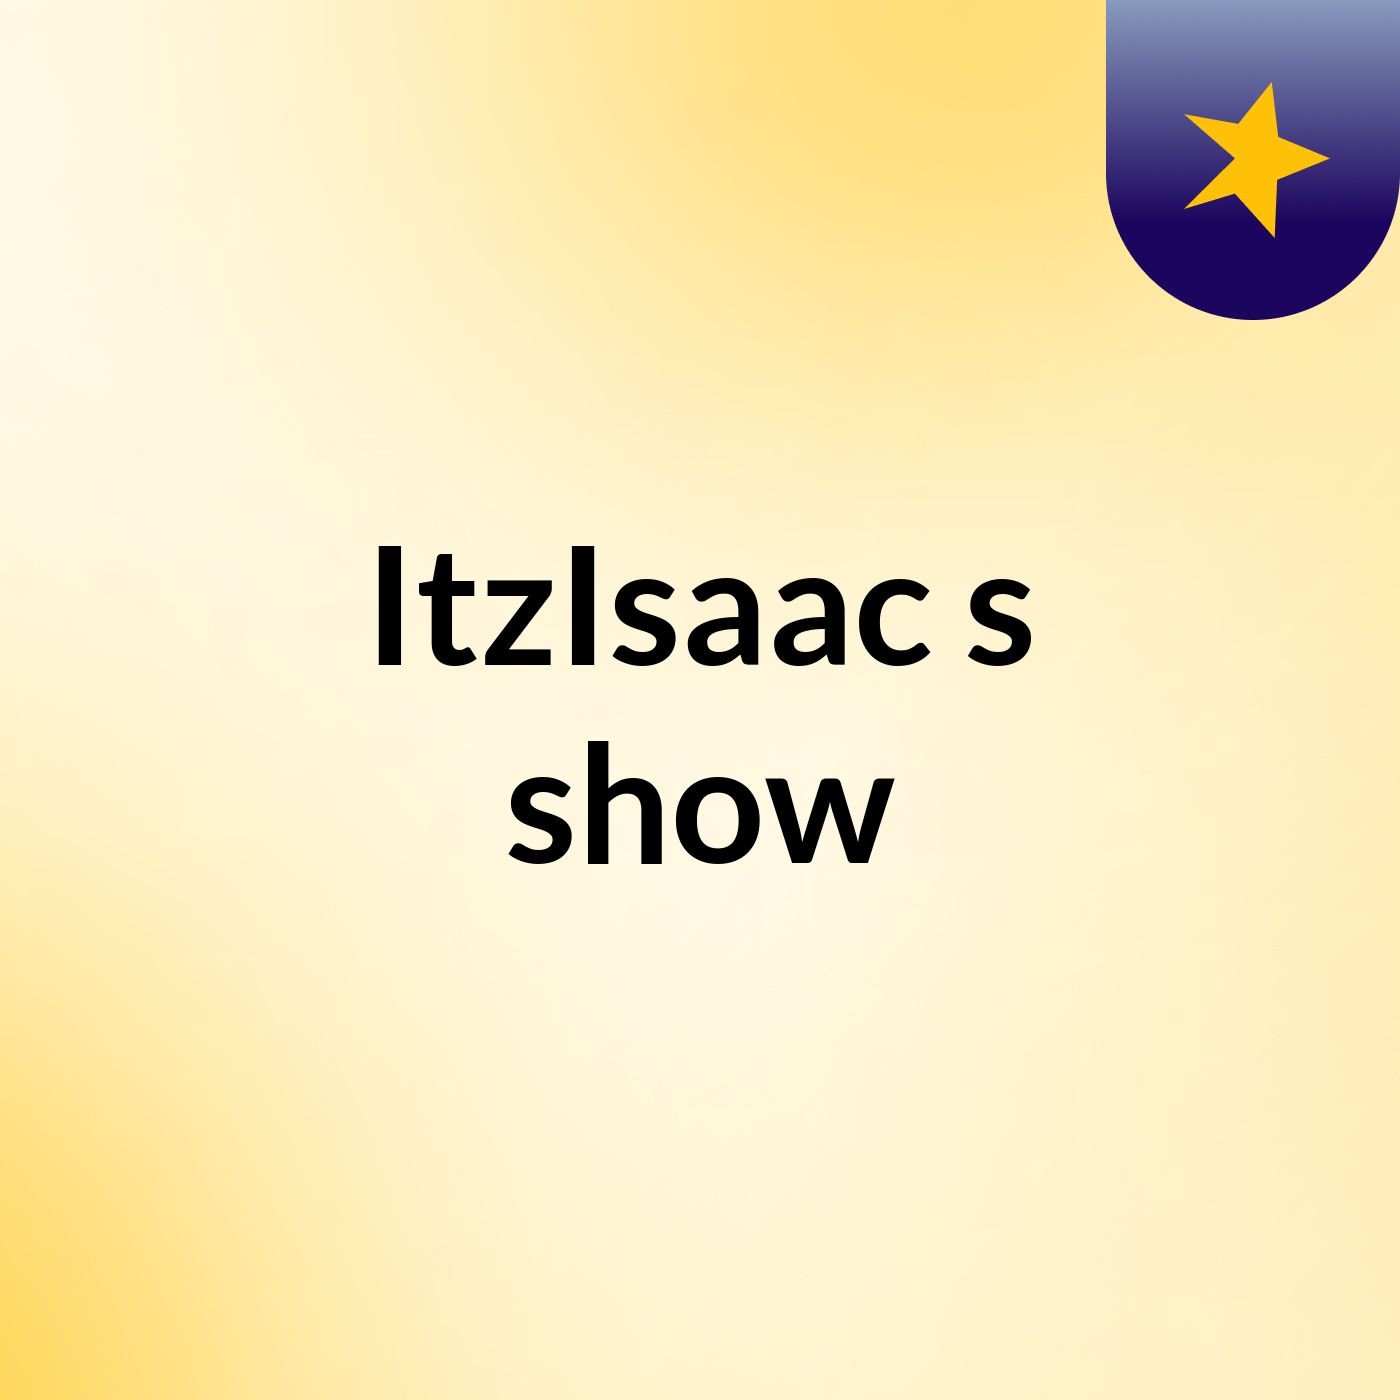 ItzIsaac's show